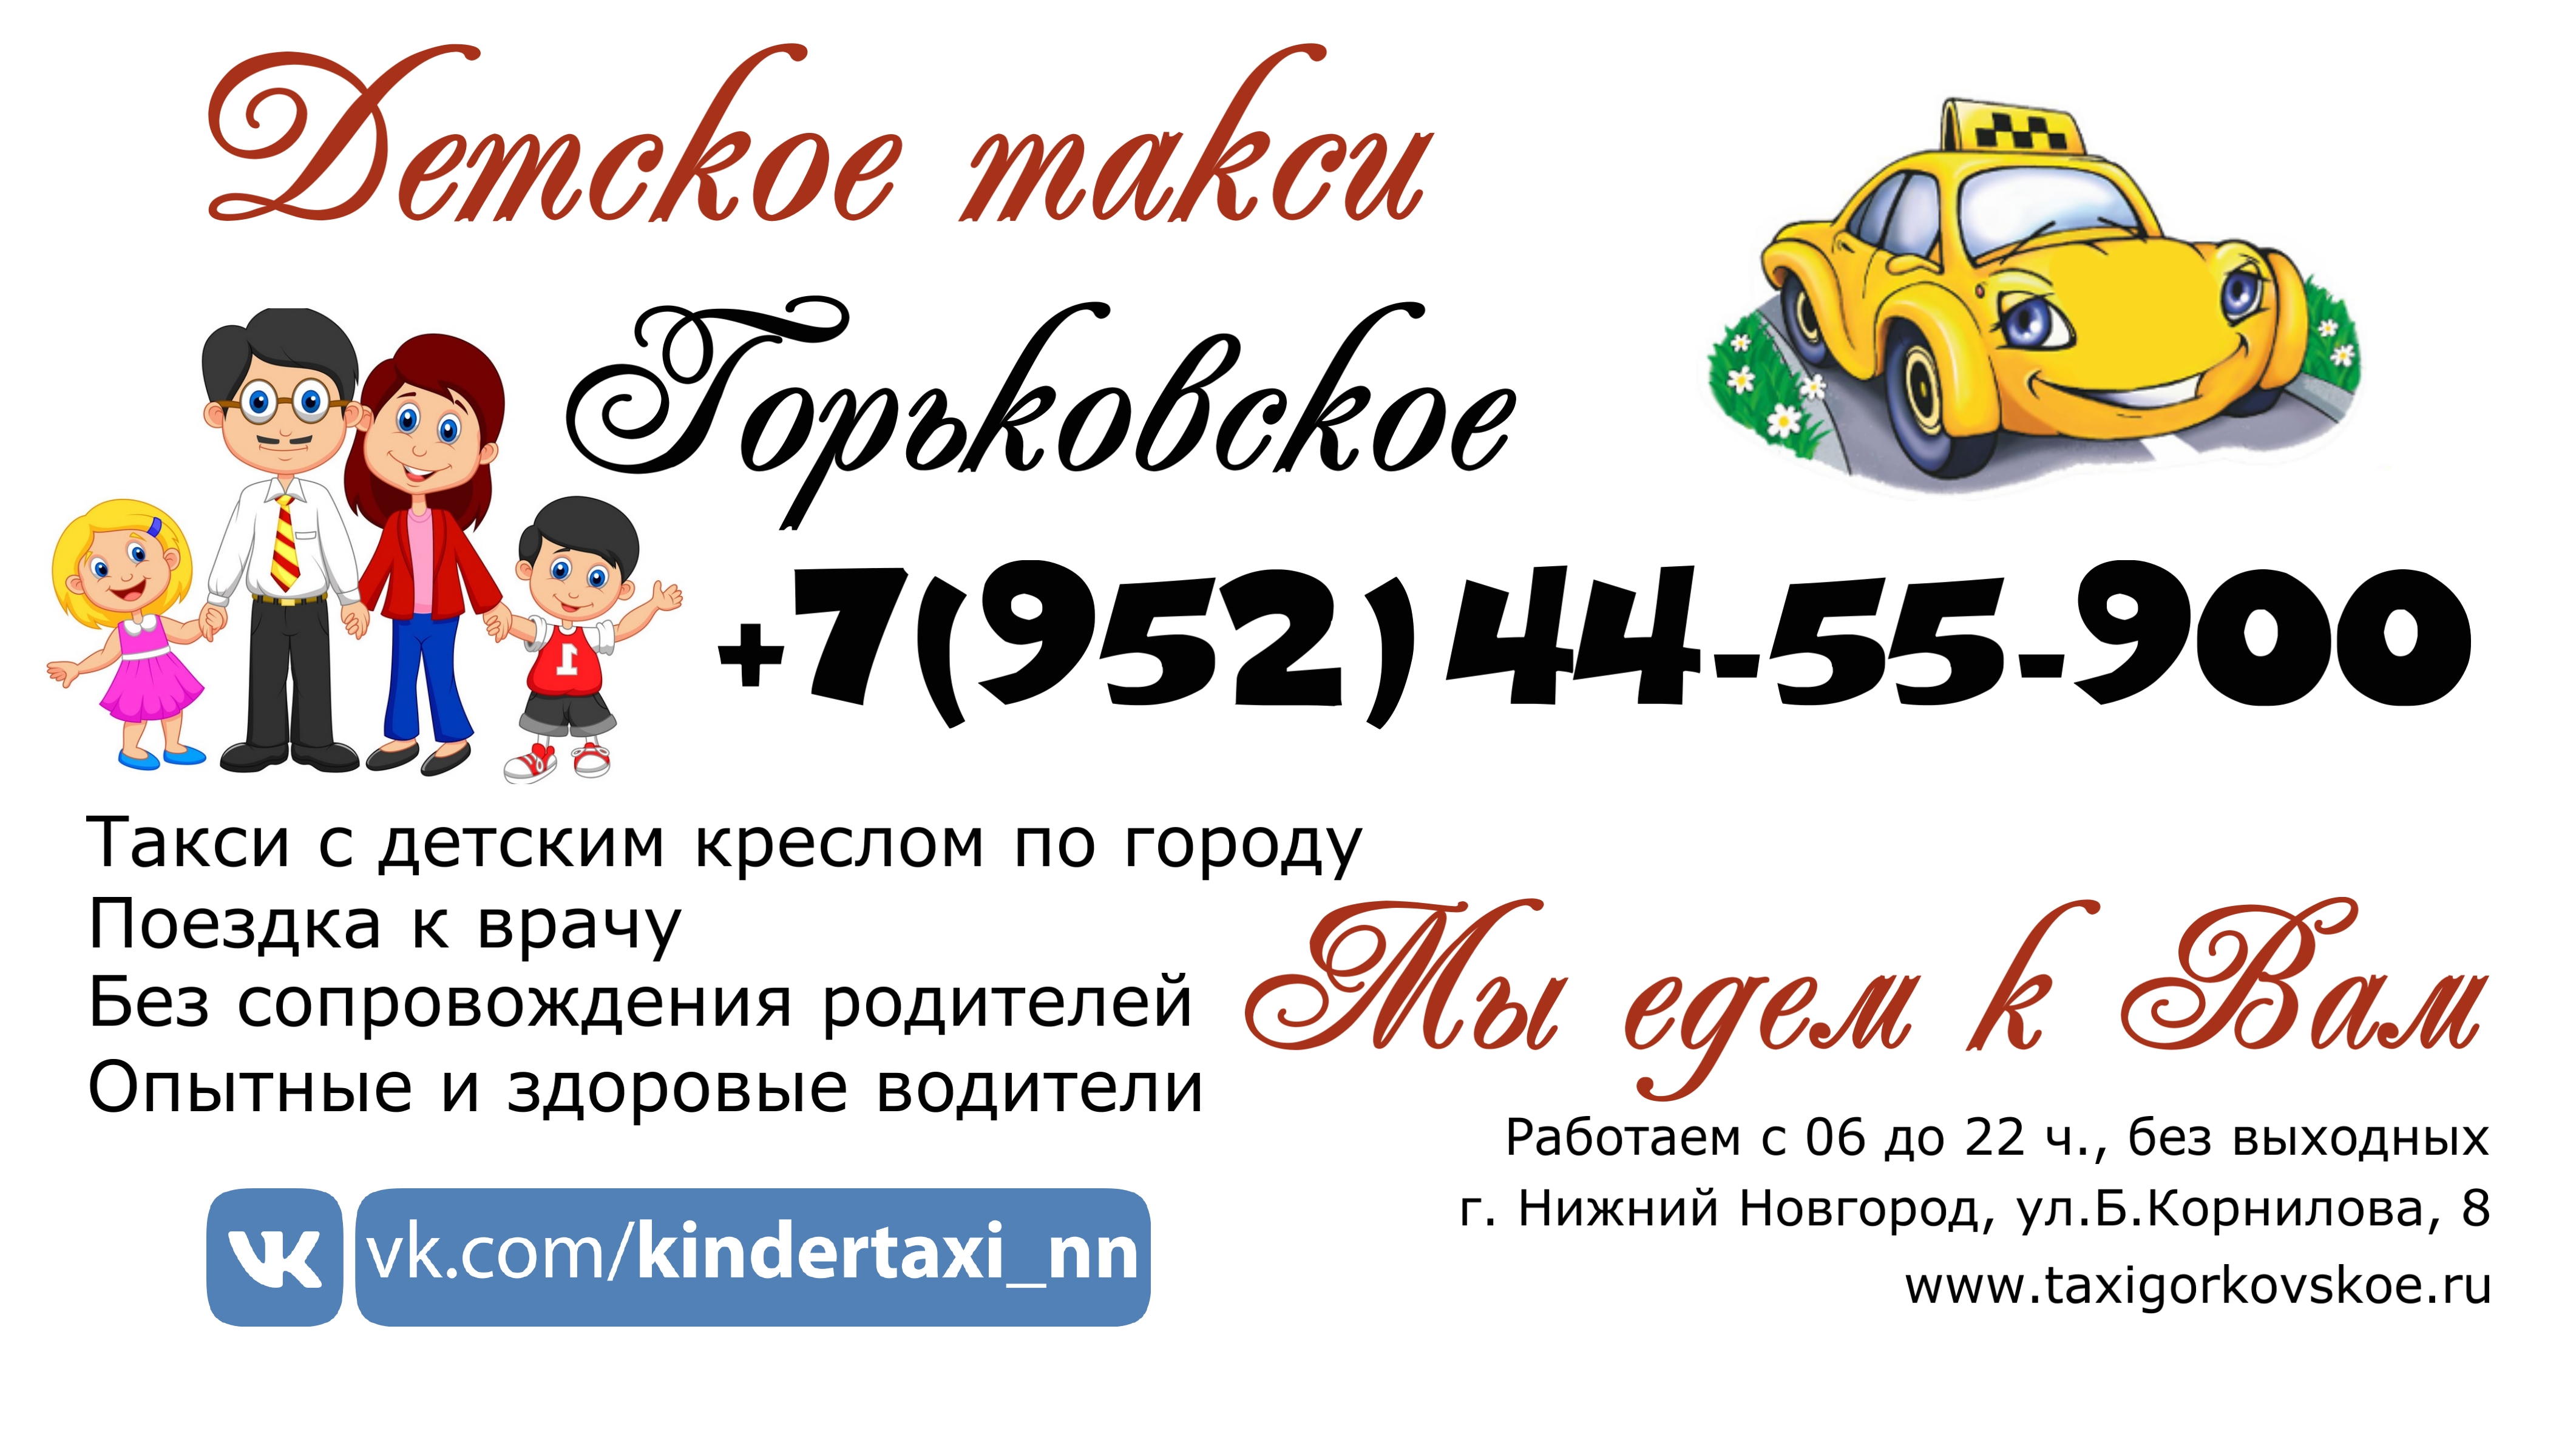 Как заказать детское такси. Детское такси. Реклама детское такси. Номер детского такси. Такси для детей без родителей.